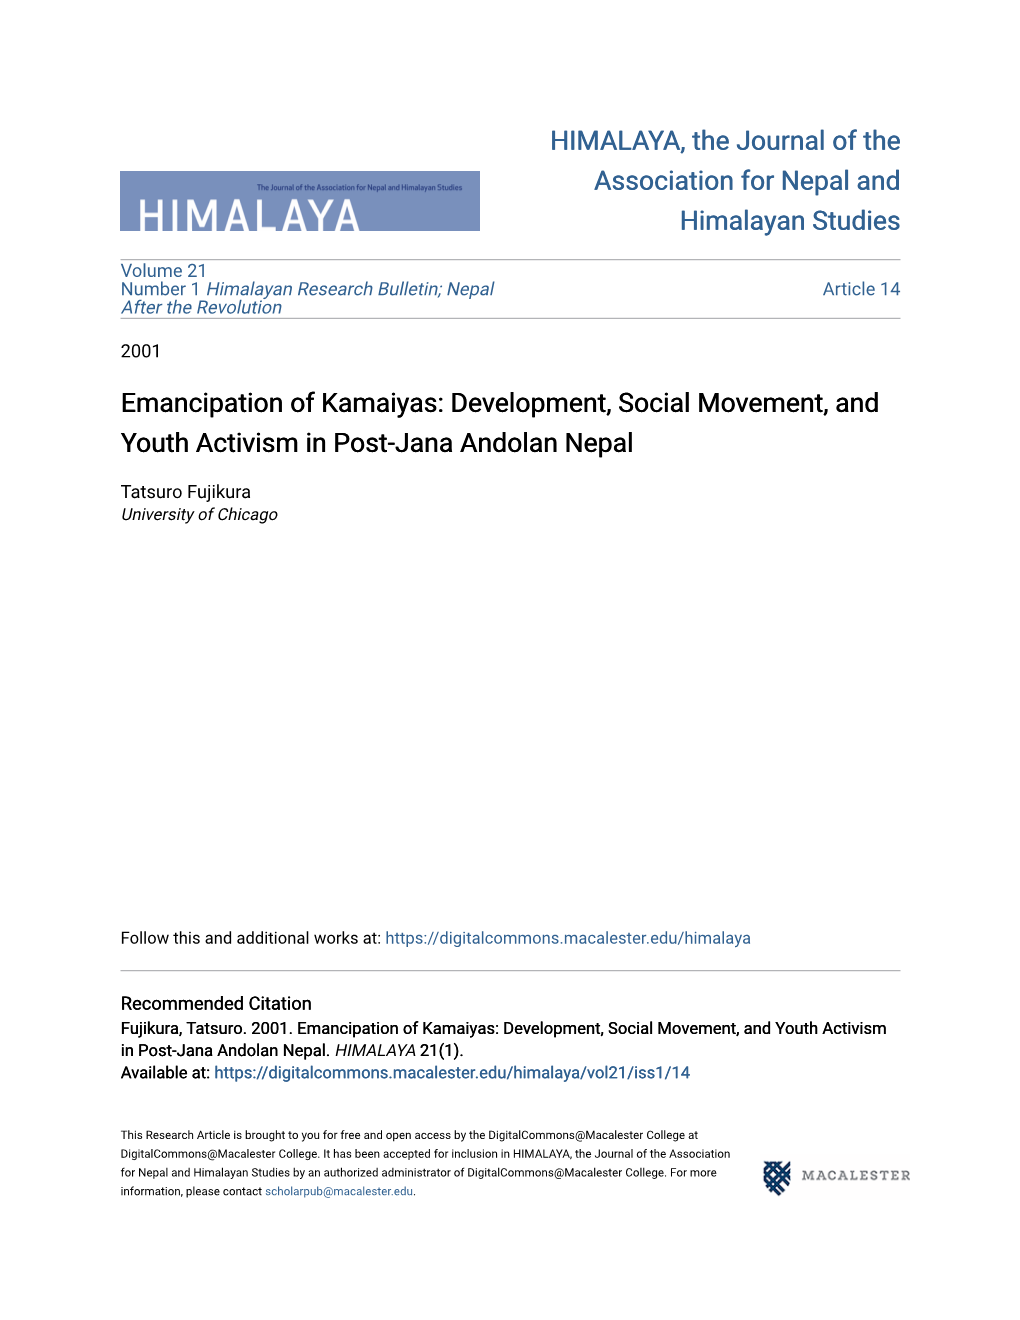 Emancipation of Kamaiyas: Development, Social Movement, and Youth Activism in Post-Jana Andolan Nepal